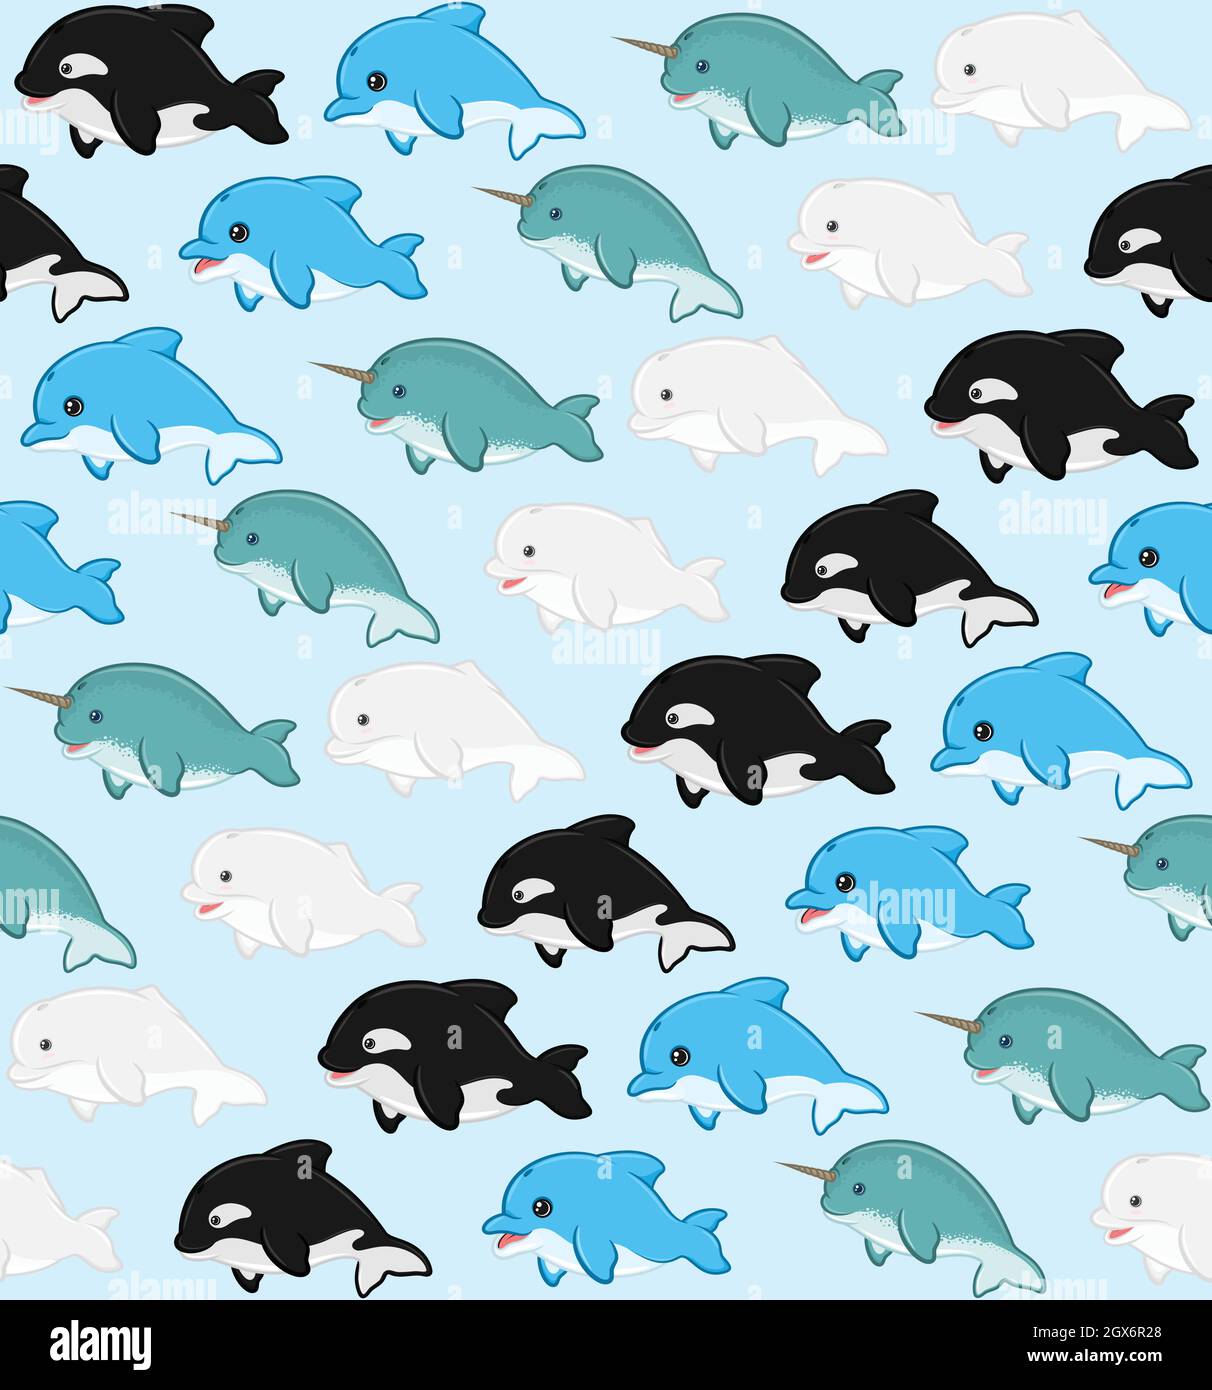 Schema mammifero acquatico con forma di cartone animato infantile, beluga, delfino, balena killer, narcale Illustrazione Vettoriale